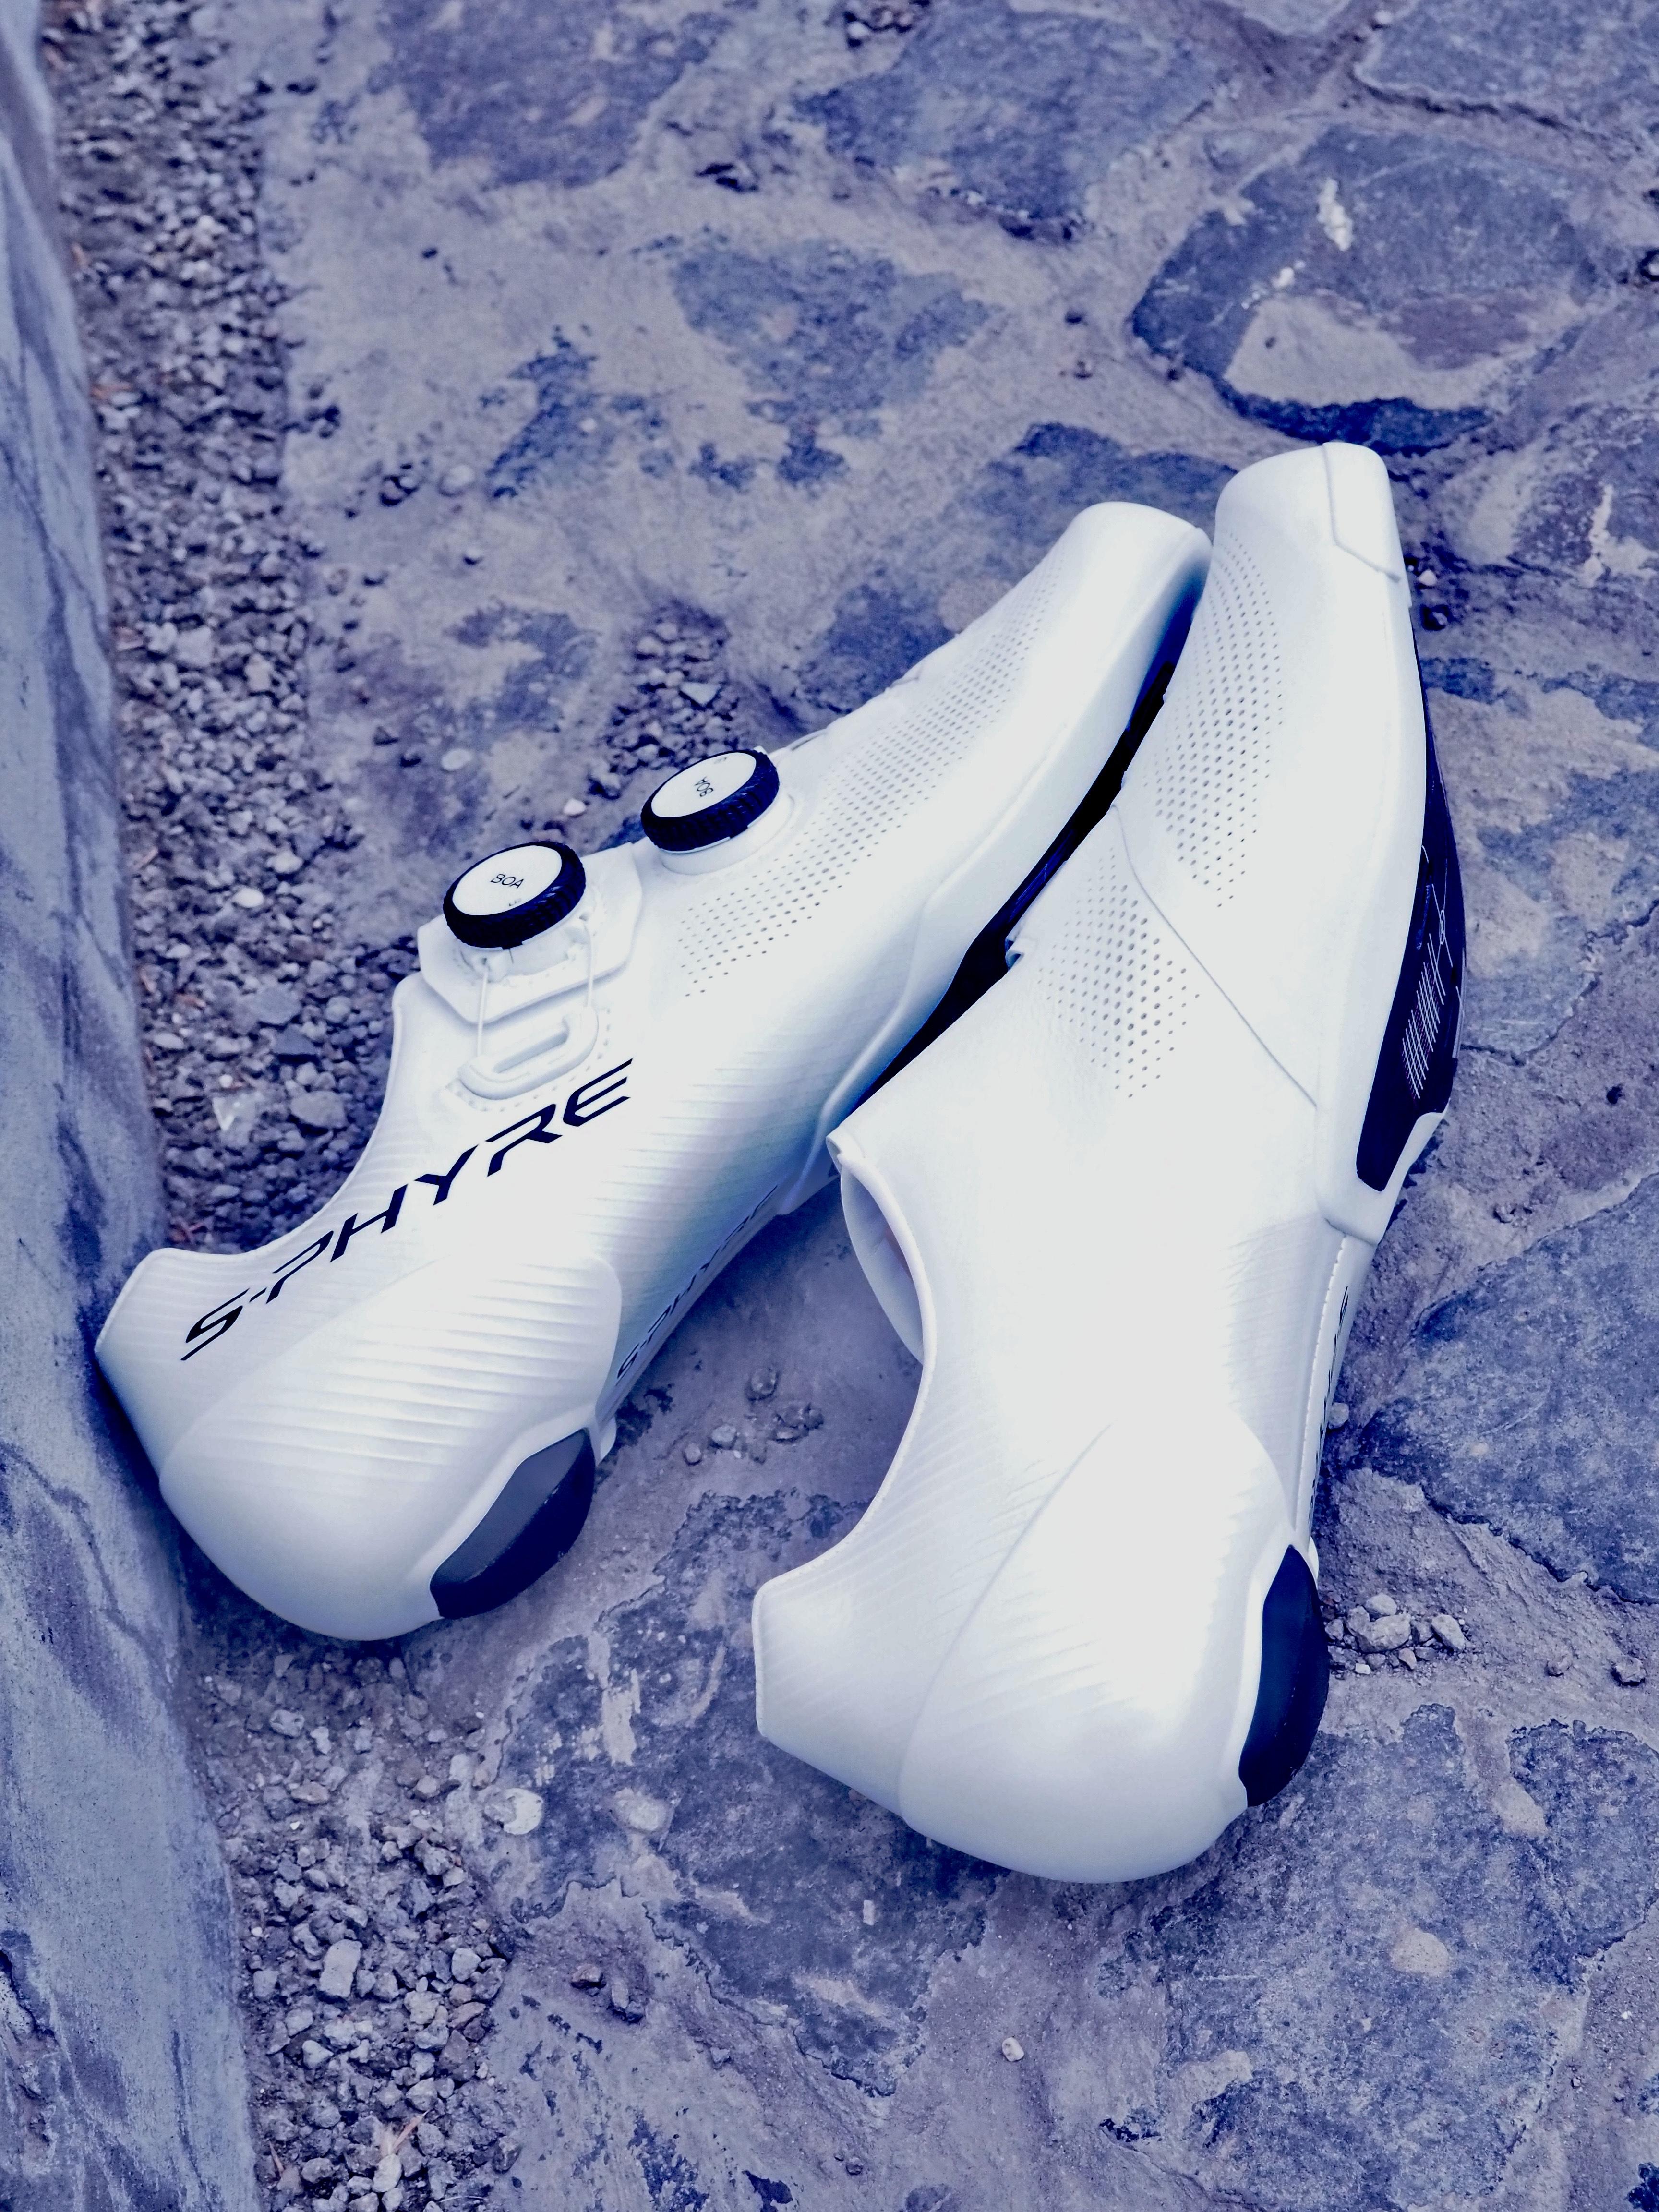 A Shimano S-PHYRE RC903 felsőkategóriás országúti cipő a DYNALAST technológiának köszönhetően rögzíti a lábat optimálisan